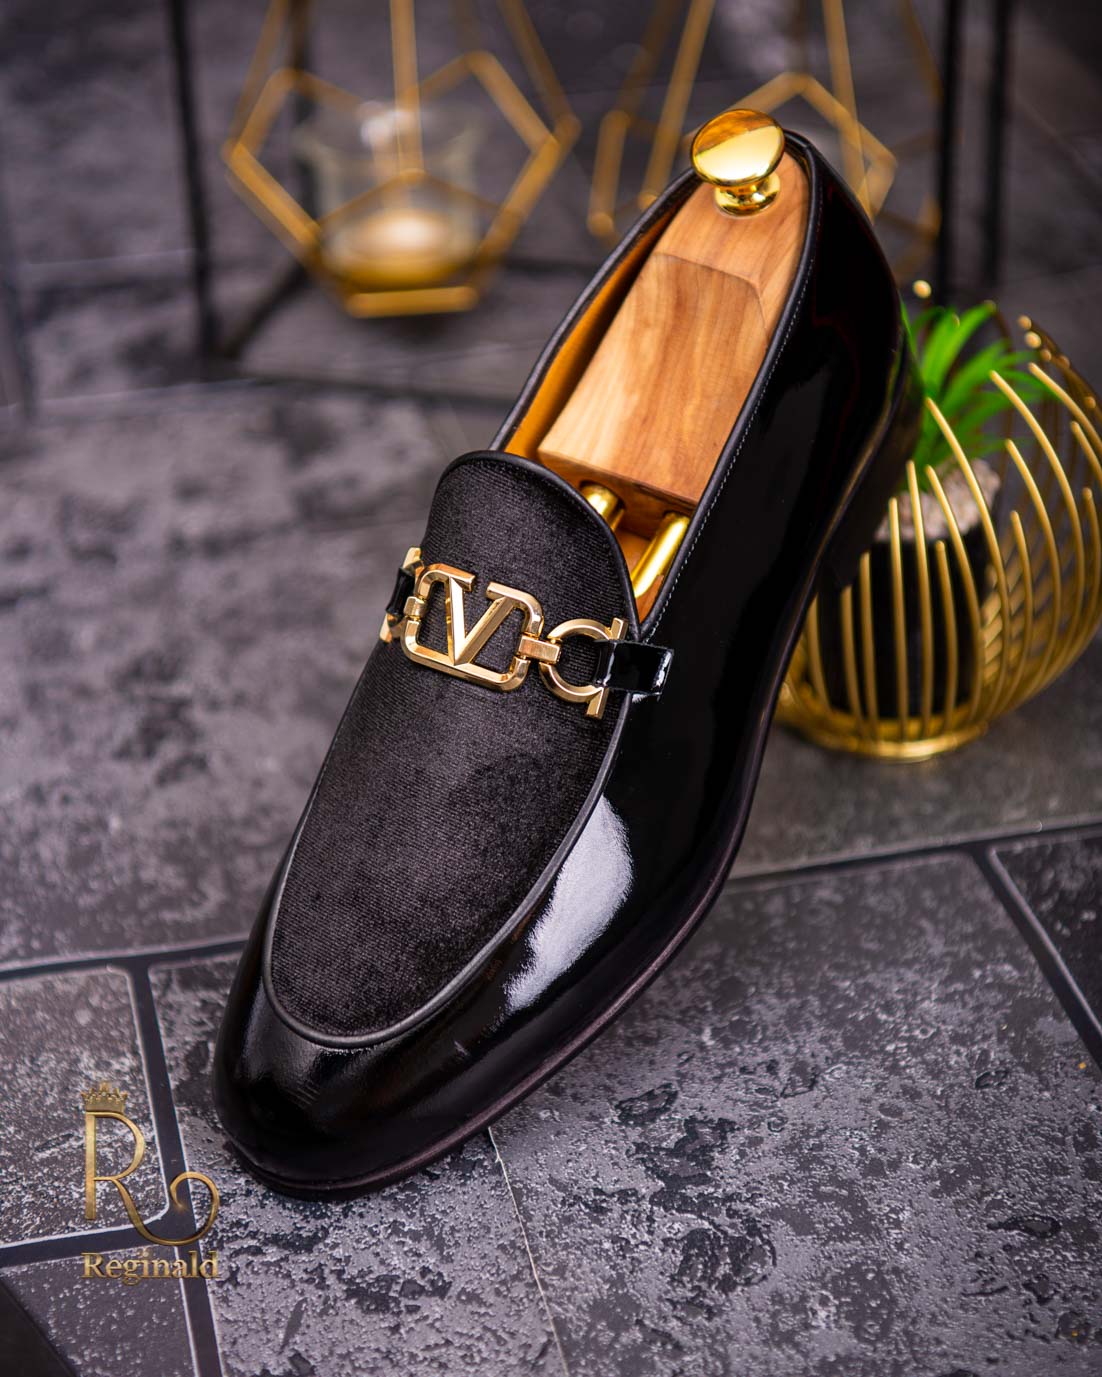 Hæl skorsten Decode Loafers sko til mænd i naturlæder, sort med fløjl - P1712